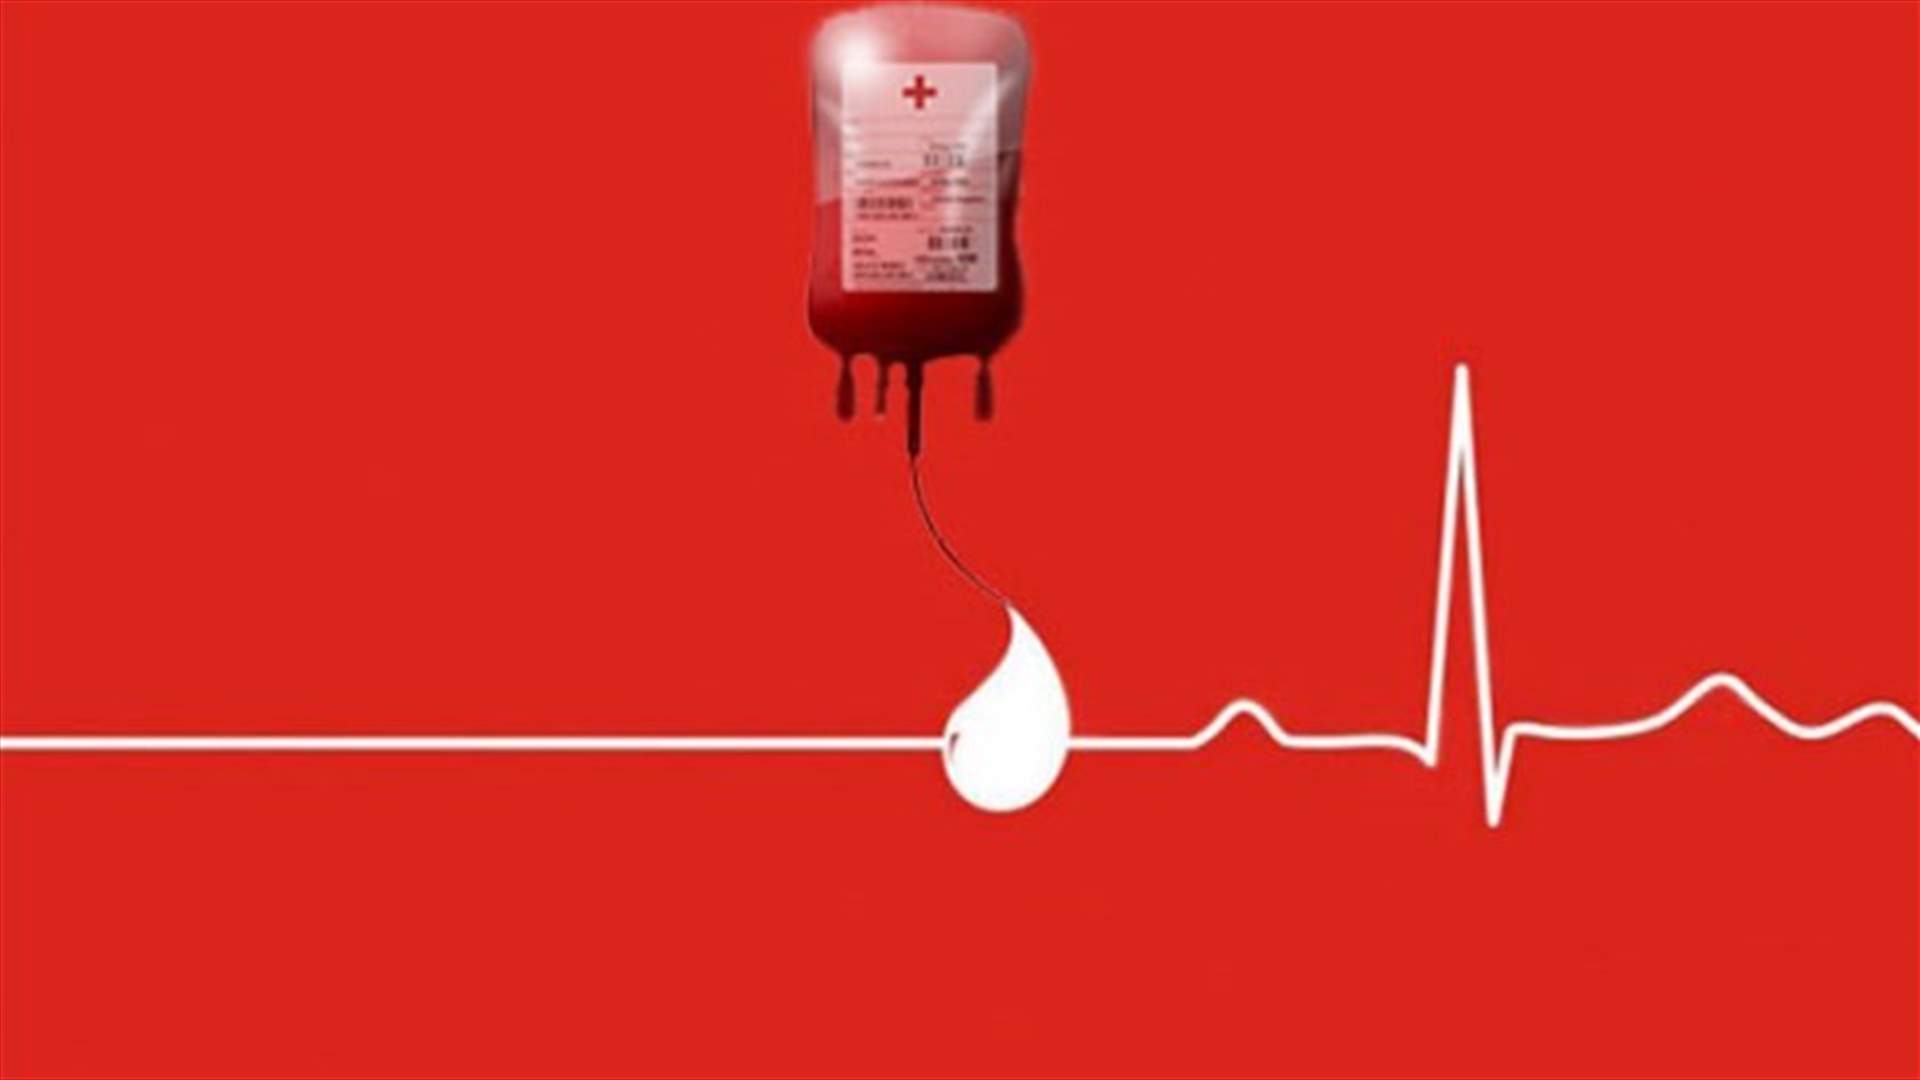 مريض في مستشفى أبو جودة بحاجة الى وحدة دم من فئة O+ ... للمساعدة الرجاء الاتصال على الرقم التالي:  76852057